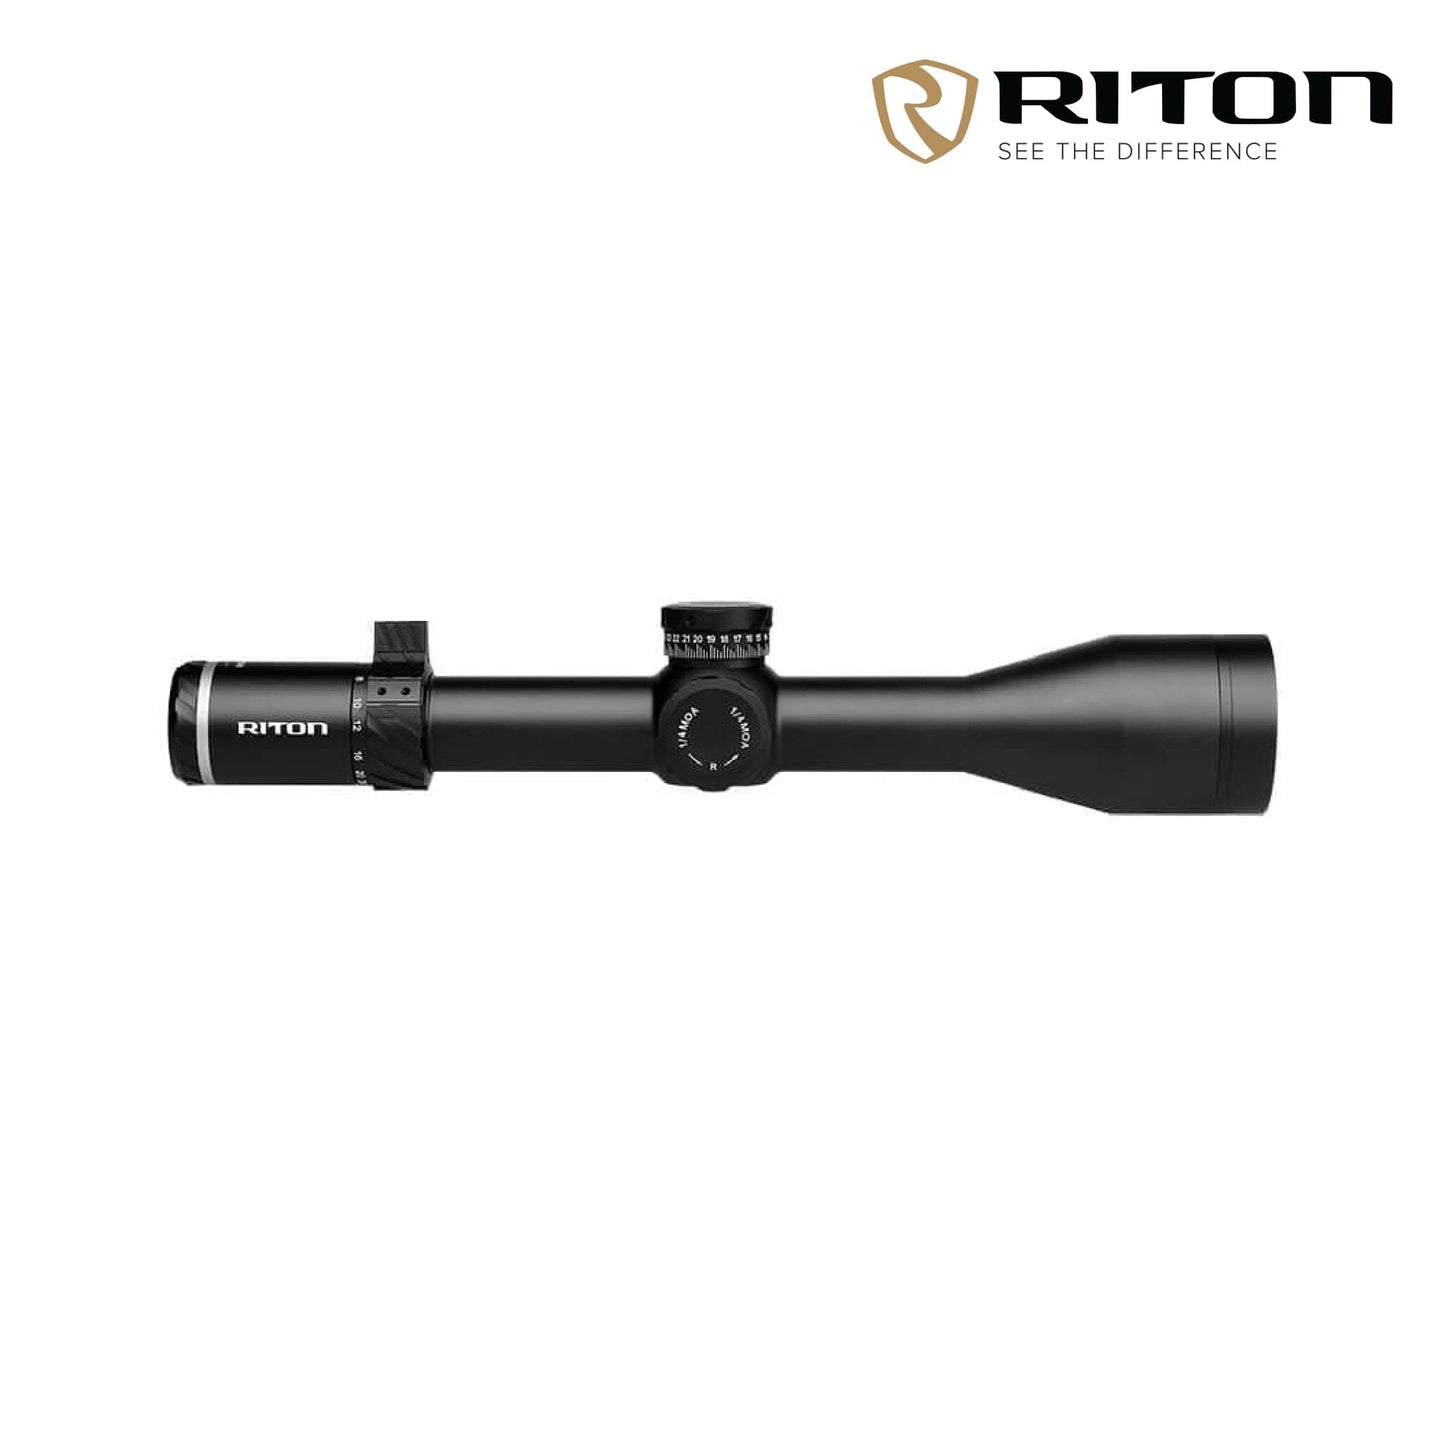 Riton Optics 5 Conquer 4-28x56 Rifle Scope Illuminated MOR (MOA) Reticle - 5C428AFI23 Rifle Scope Riton Optics 